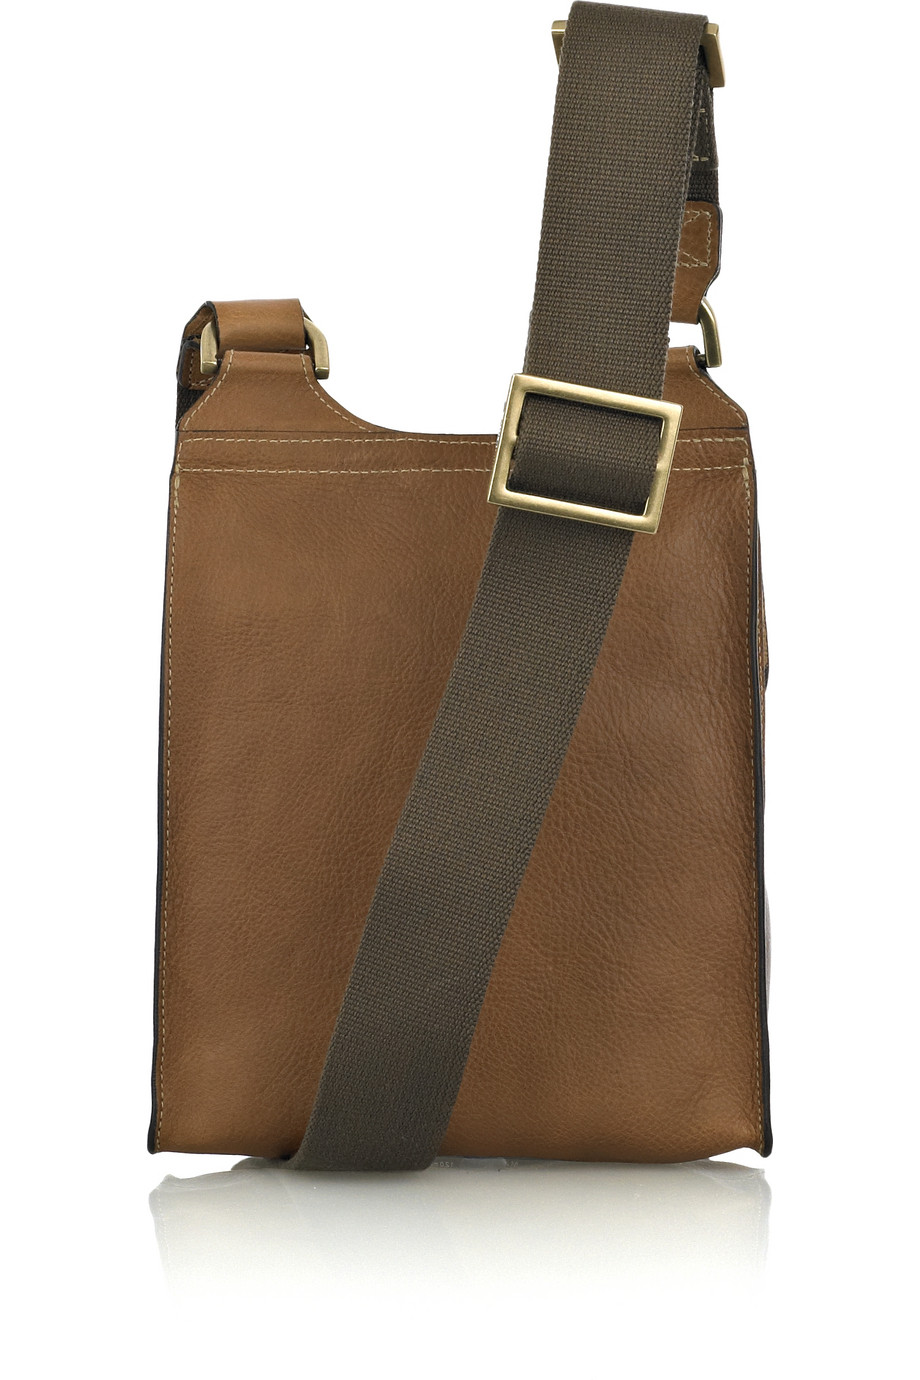 Mulberry Antony Leather Cross-body Bag in Oak (Brown) - Lyst